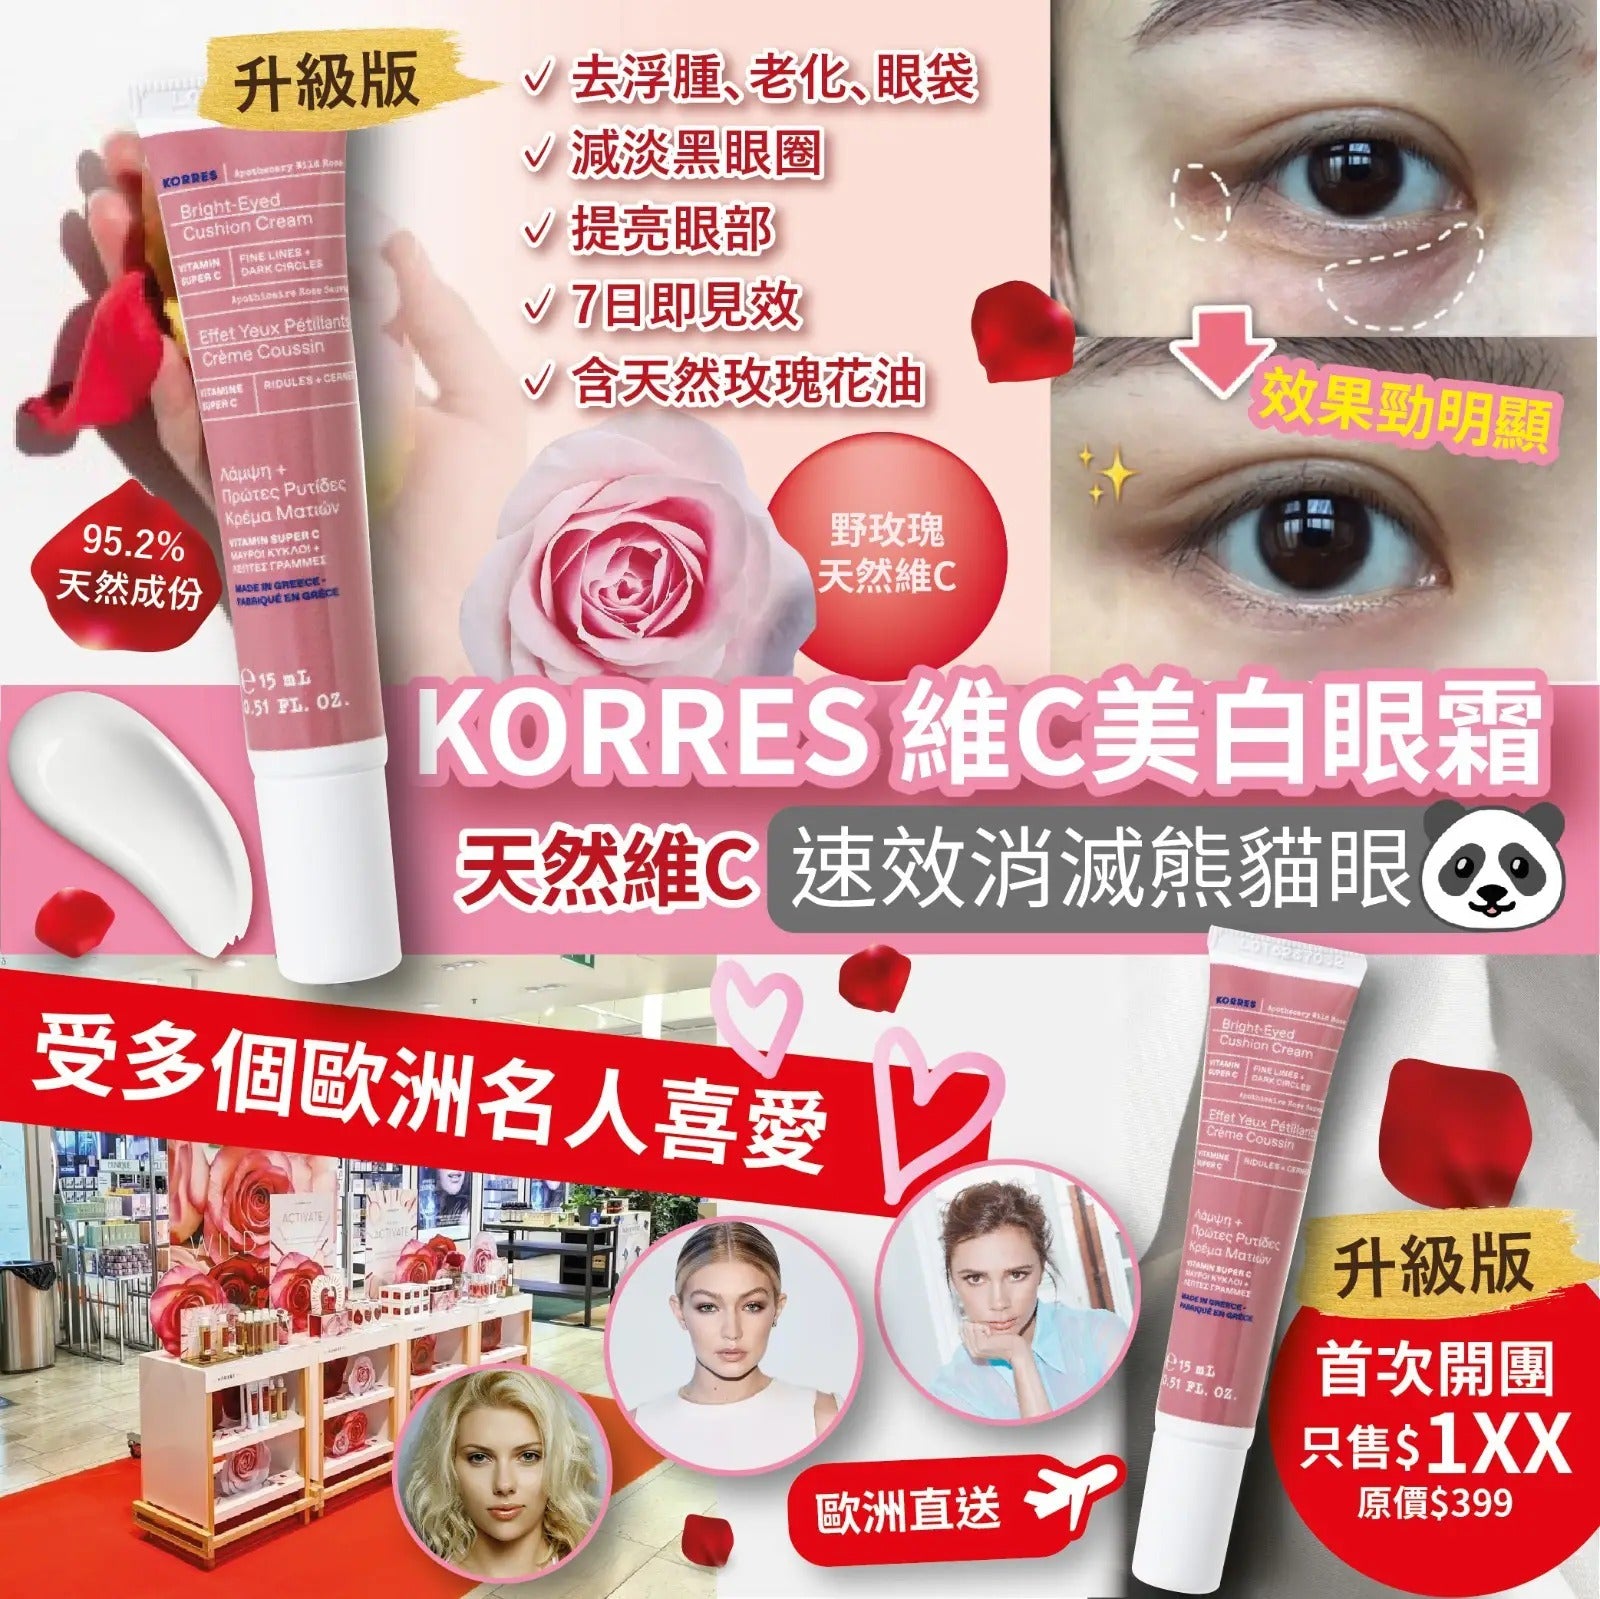 KORRES 野玫瑰維C美白眼霜15ml <升級版>香港首次有售